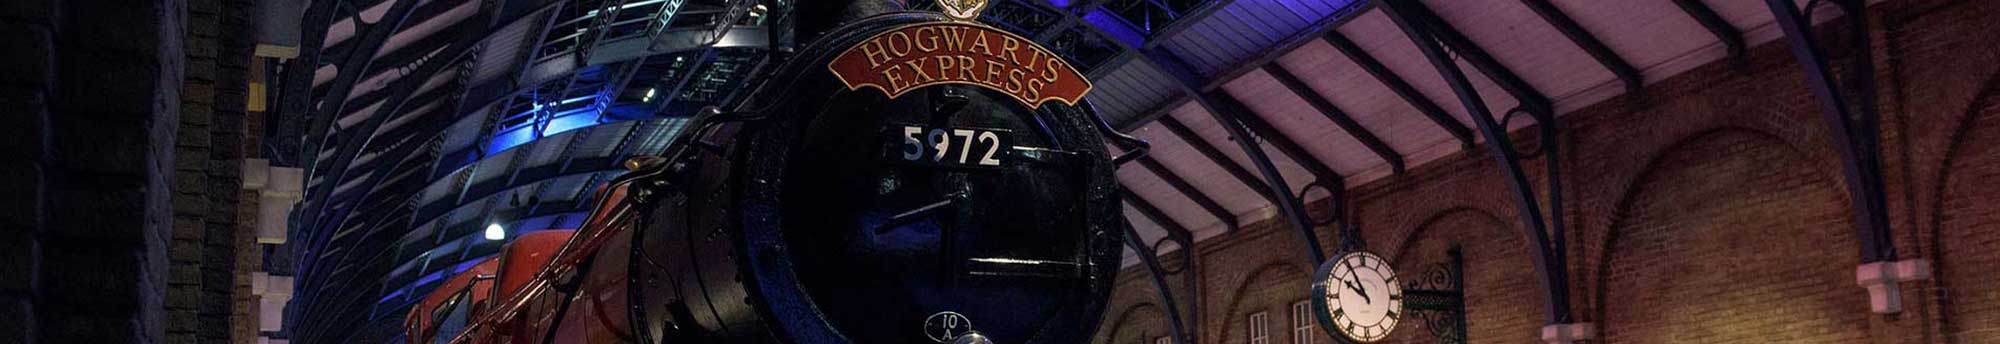 Volo + Hotel + Biglietti Tour a piedi Harry Potter per Londra